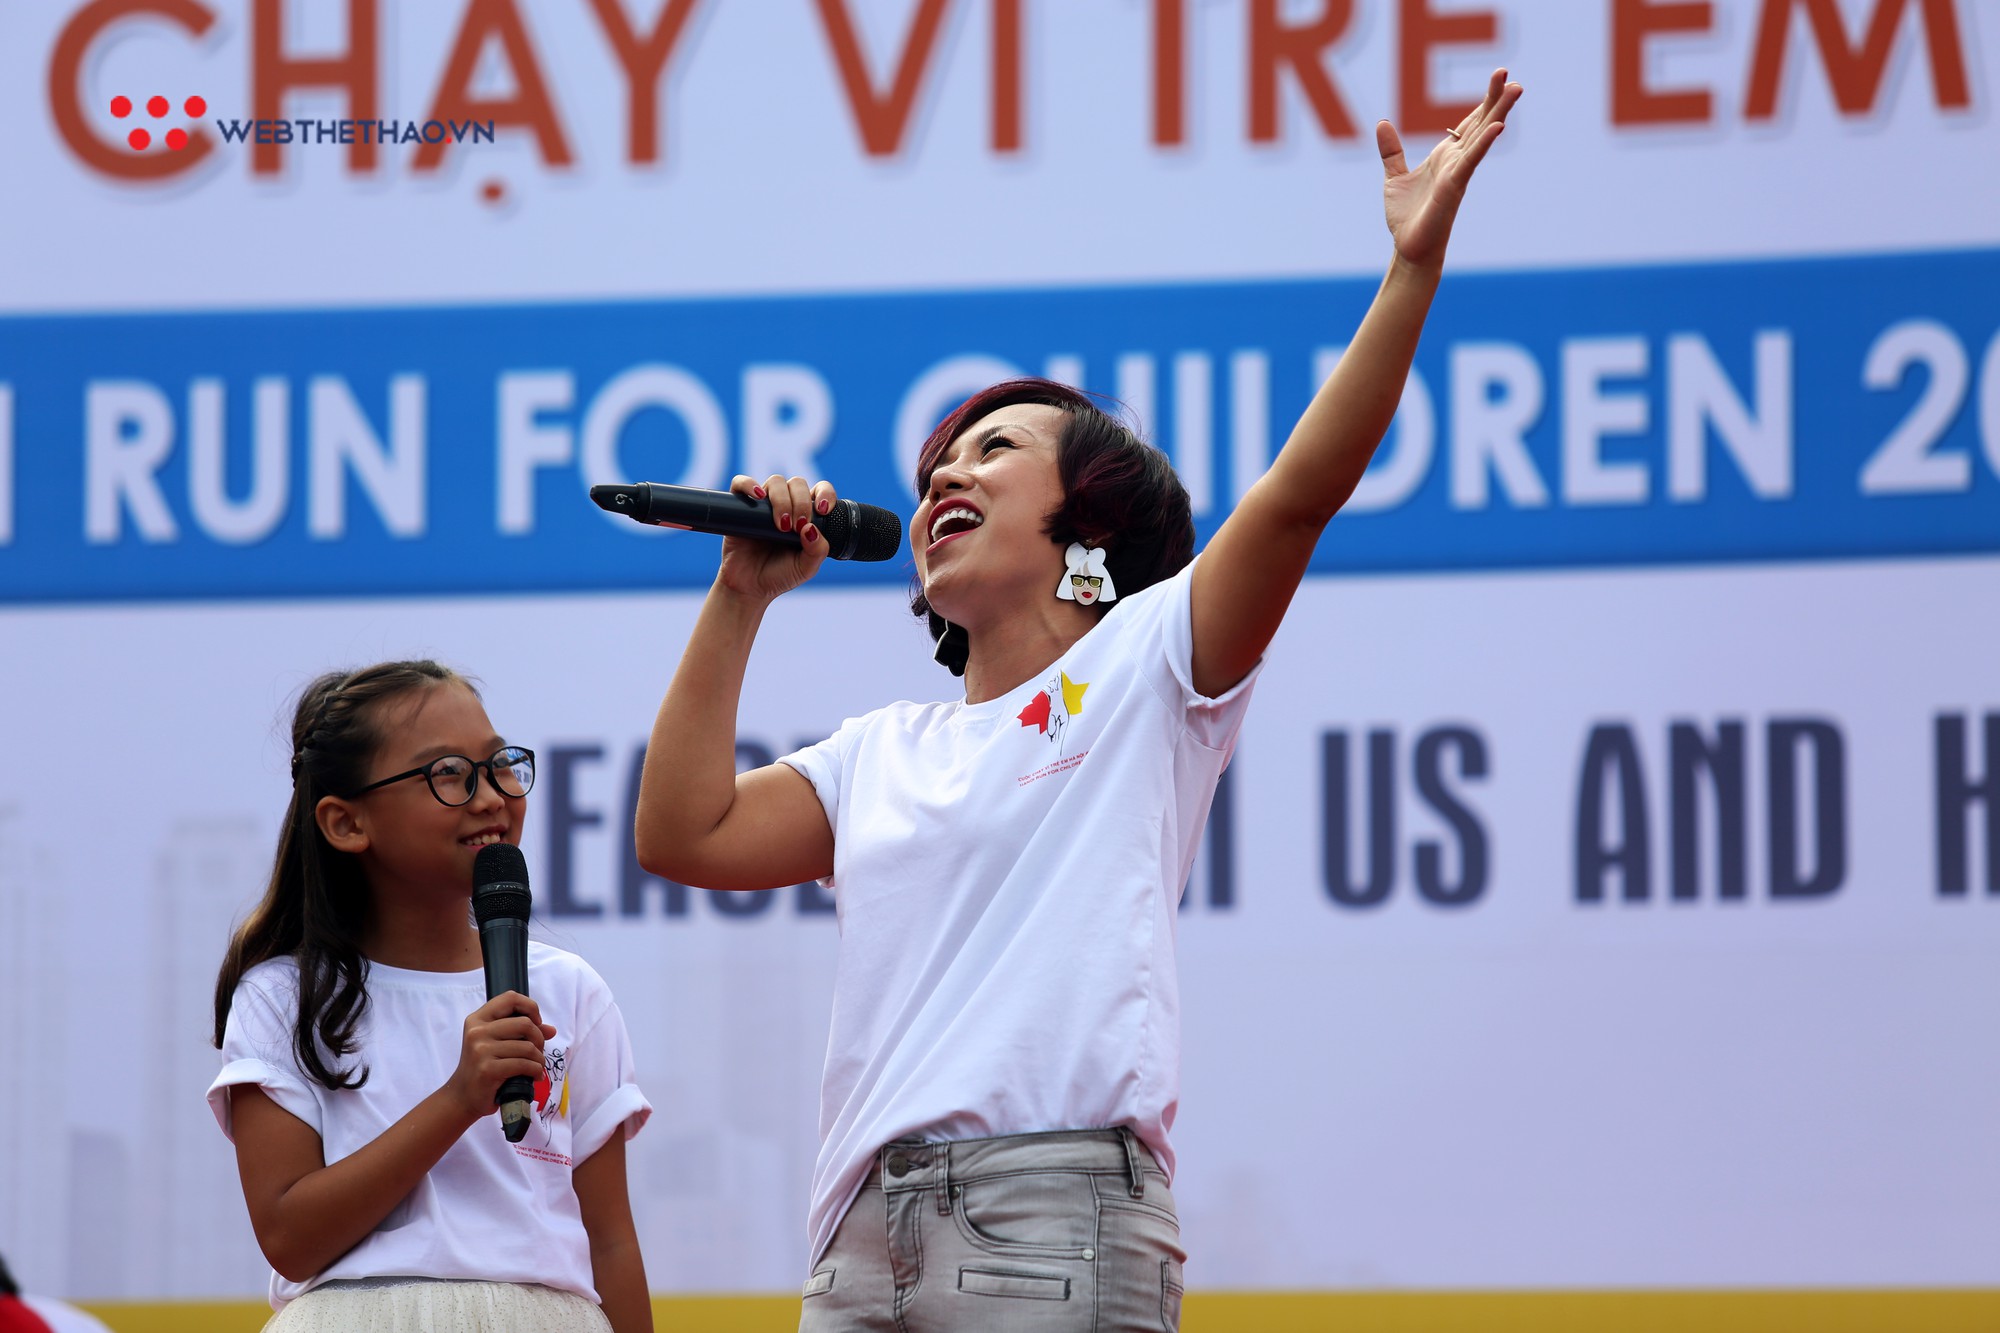 Ca sĩ Thái Thùy Linh, Đức Tuấn ‘quẩy’ nhiệt tình tại Chạy vì trẻ em Hà Nội 2018 - Ảnh 7.